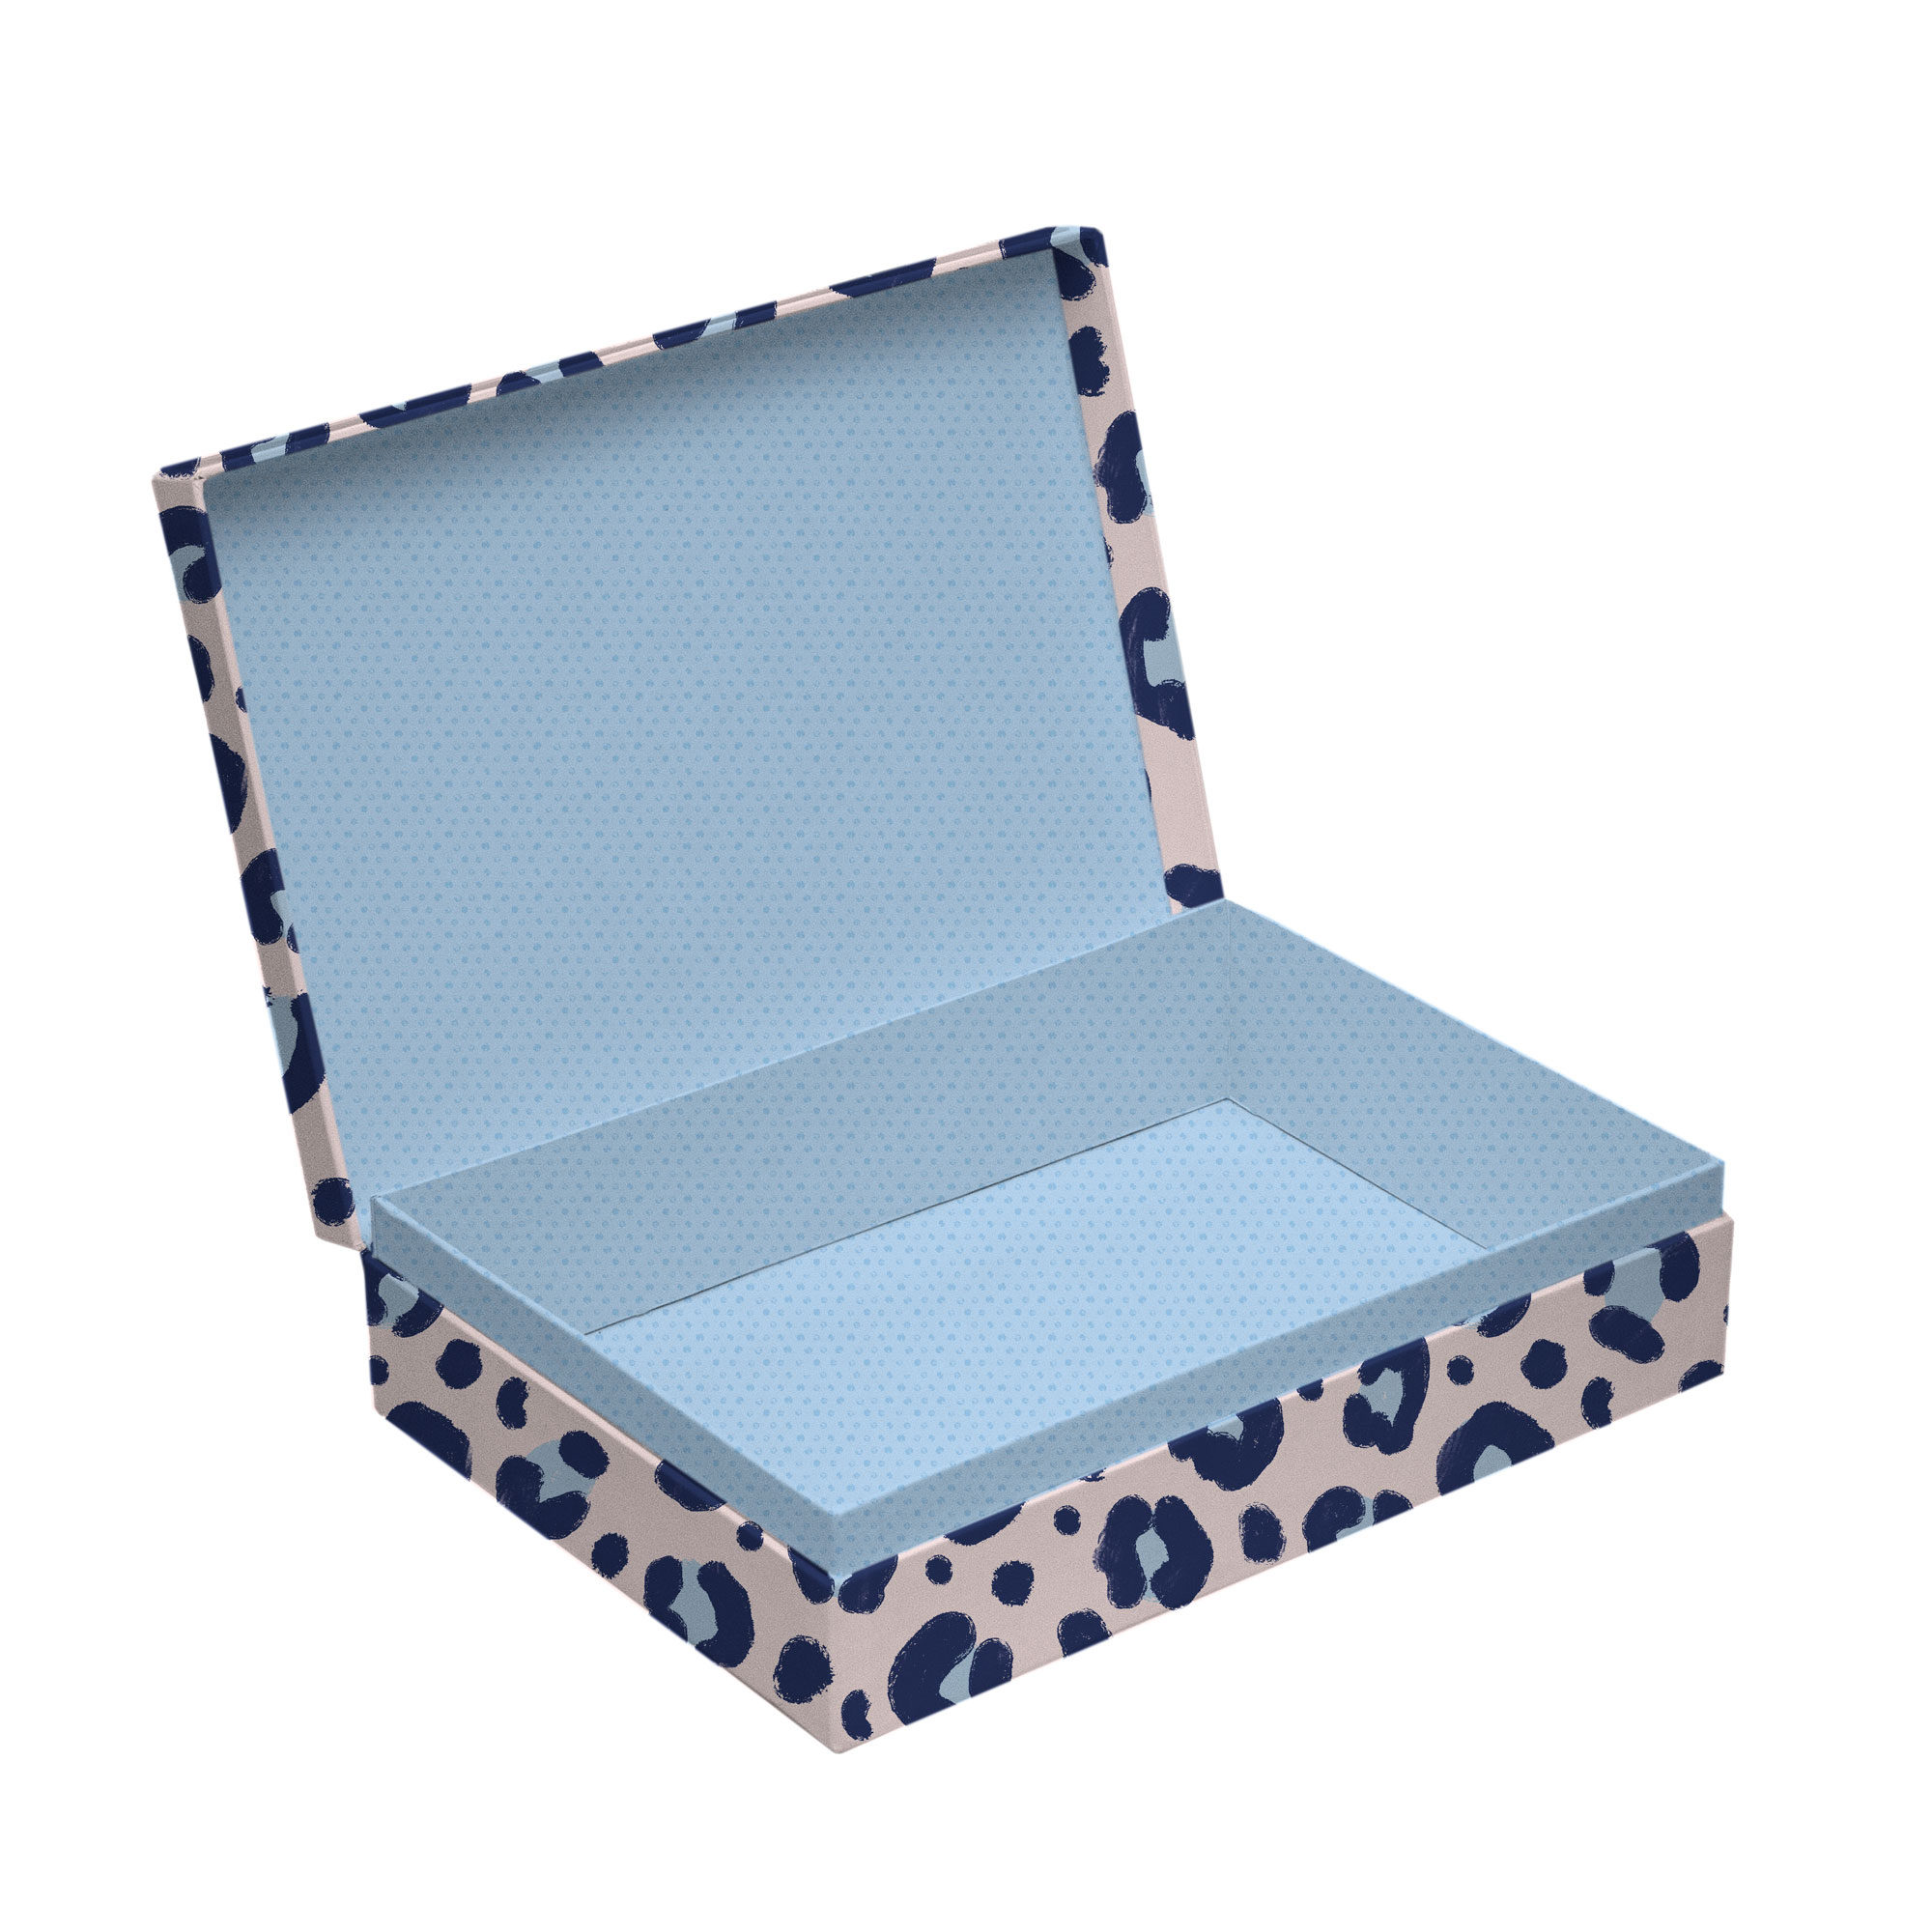 Crazy Box - Cajas candado ideales para toda clase de detalles. Pregunta por  la tuya. 📲3206635824 #cajaspersonalizadas #cajas #ideas #bucaramangacity  #carton #empaques #box #ventascolombia #emprendimiento #sorpresas  #tortaspersonalizadas #tortas